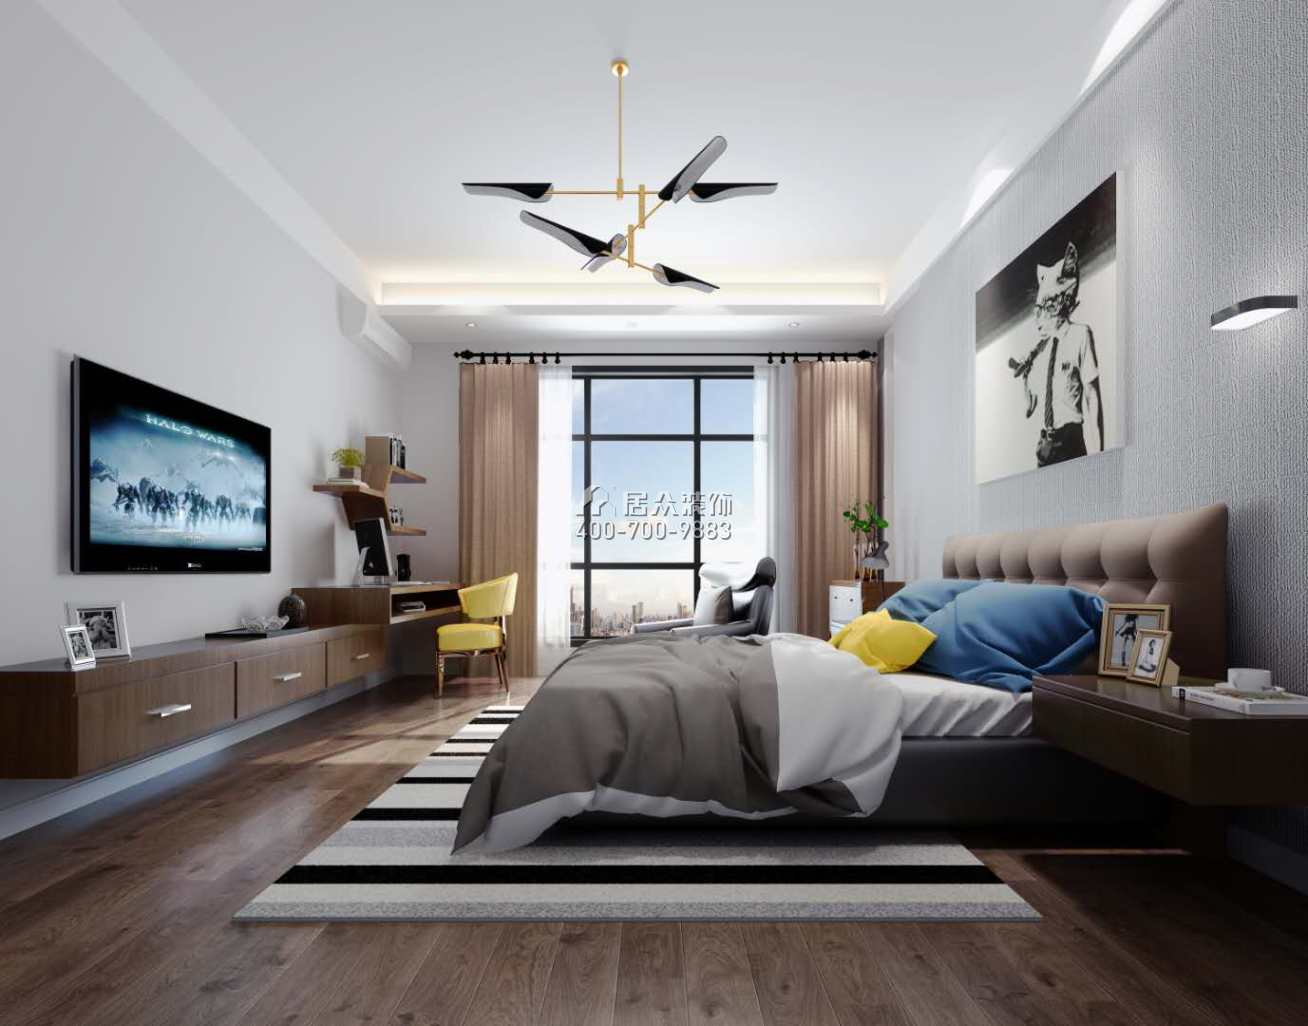 泉州中骏天峰240平方米现代简约风格复式户型卧室装修效果图